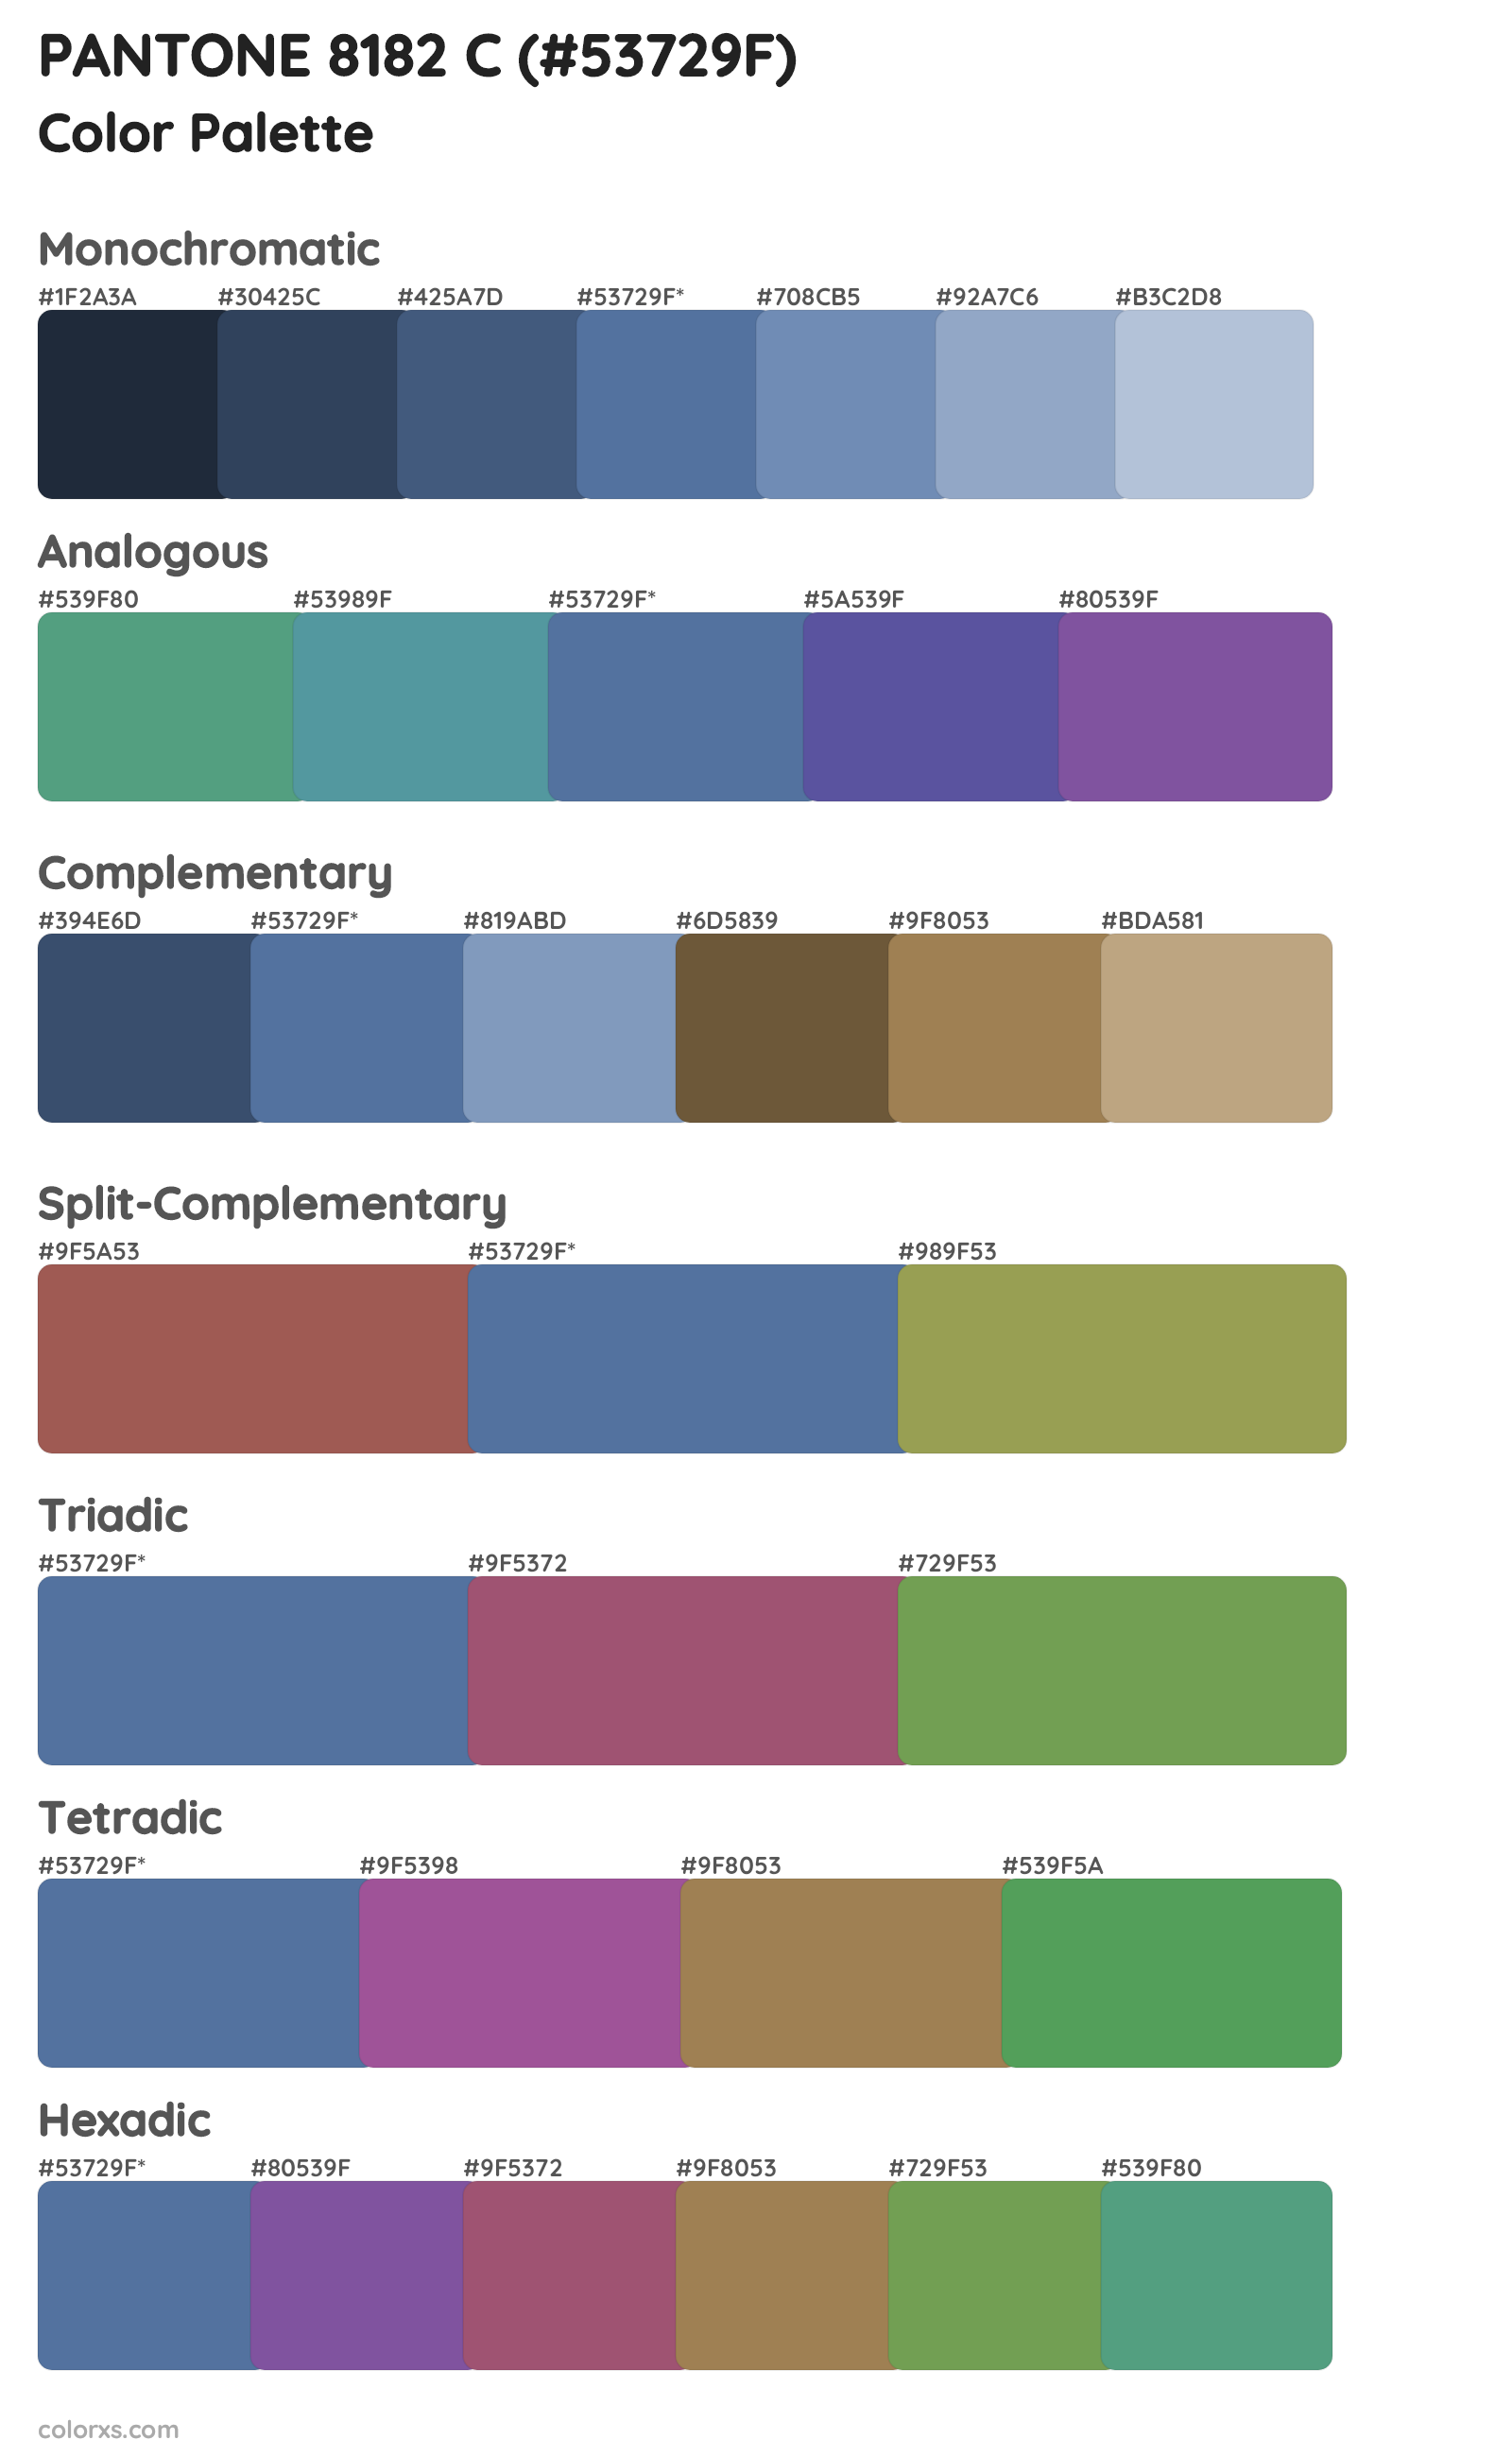 PANTONE 8182 C Color Scheme Palettes